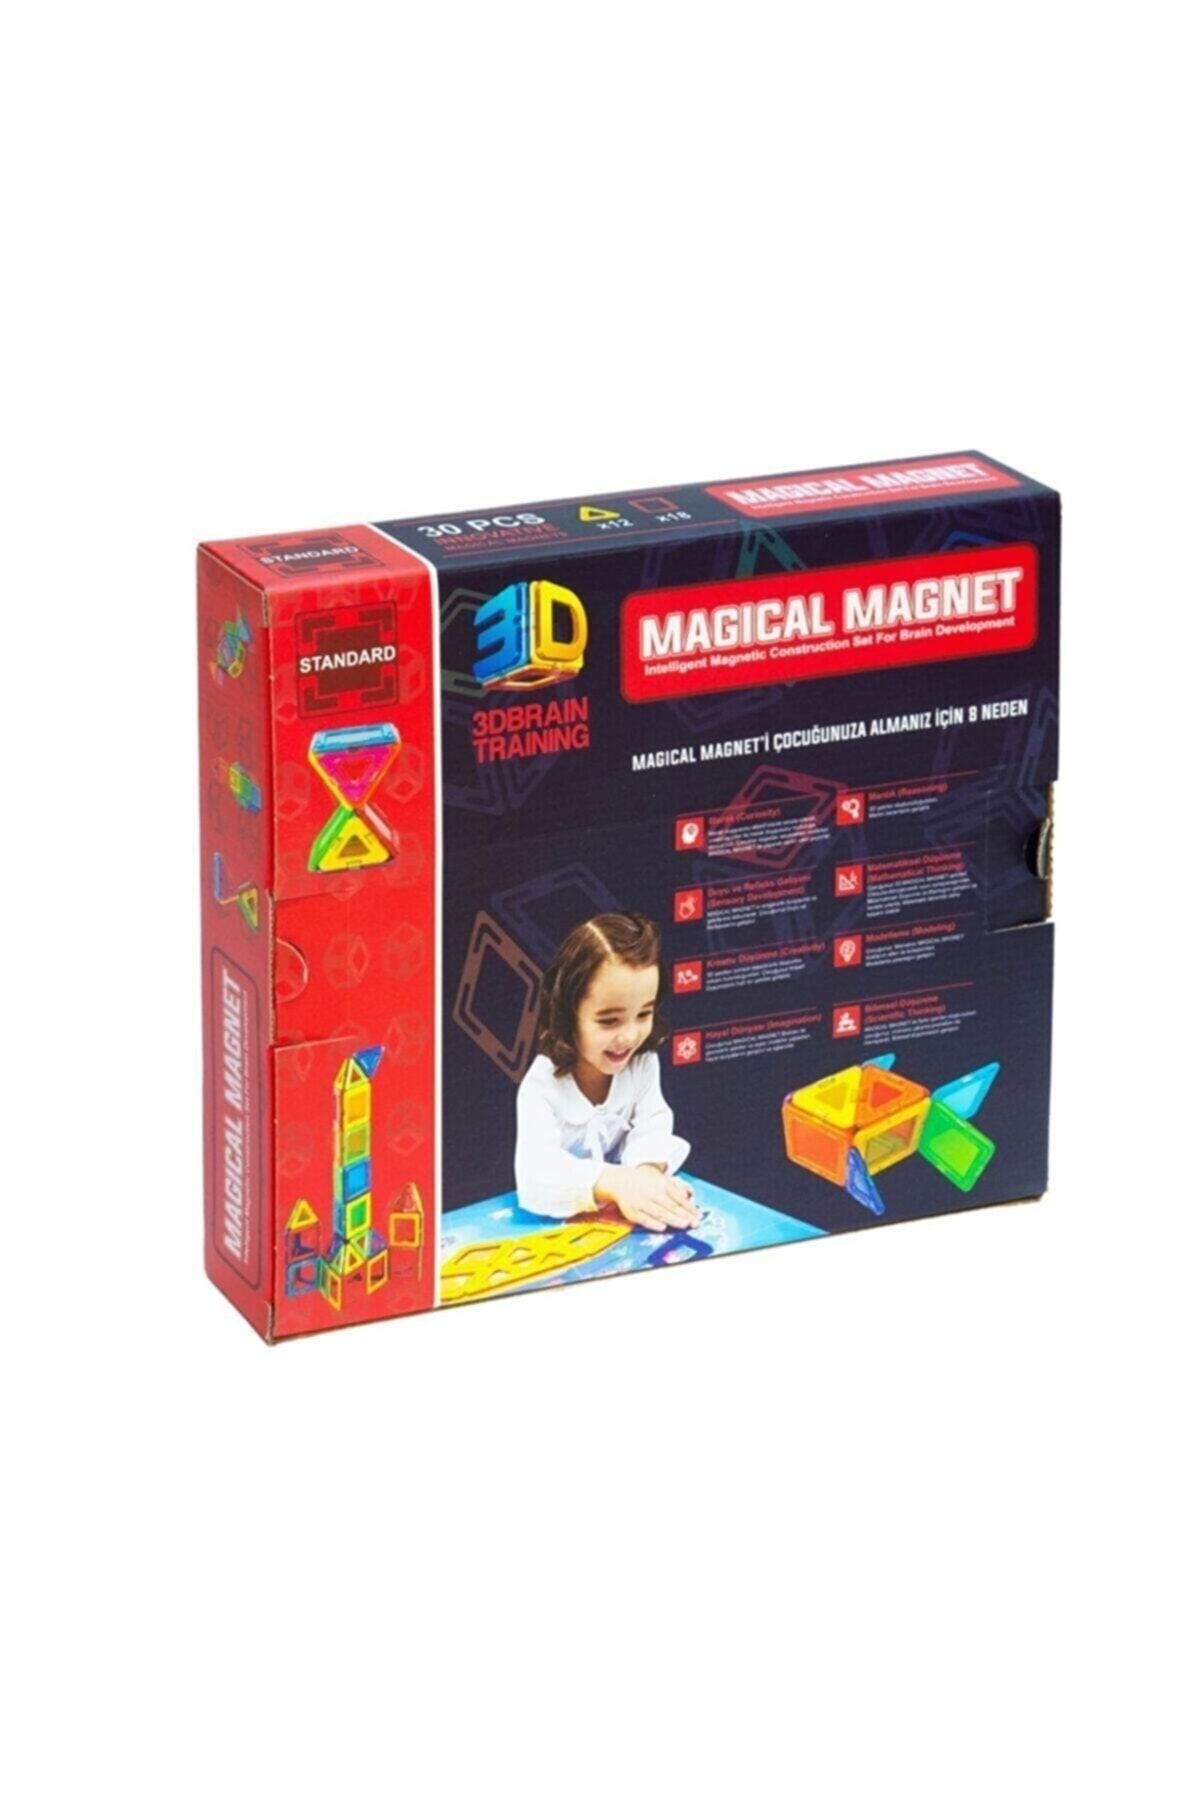 BAŞEL OYUNCAK Magical Magnet , Mıknatıslı, Manyetik 3 Boyutlu , Yapı Ve Tasarım Lego Eğitim Seti, 30 Parça